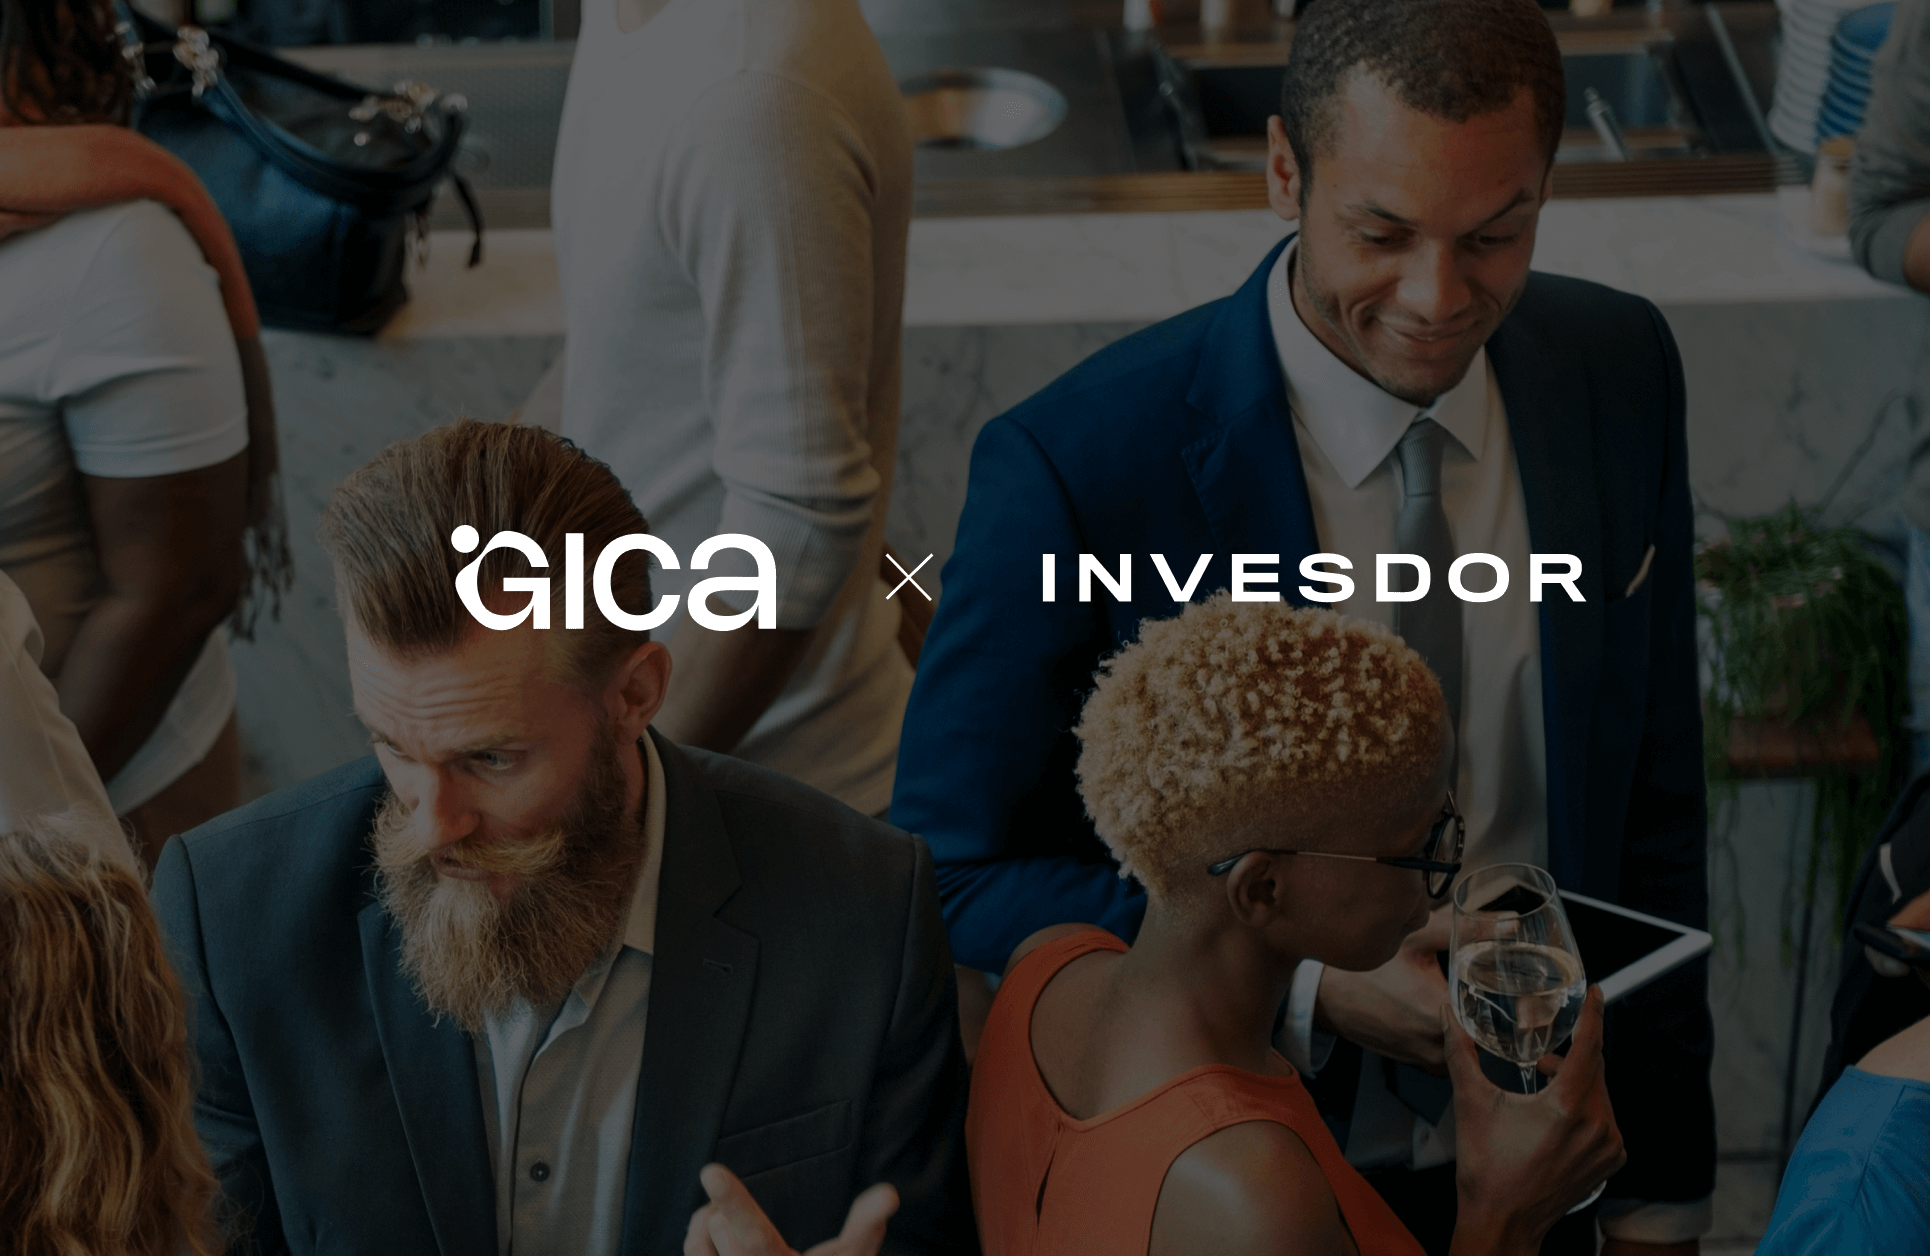 GICA and Invesdor partnership